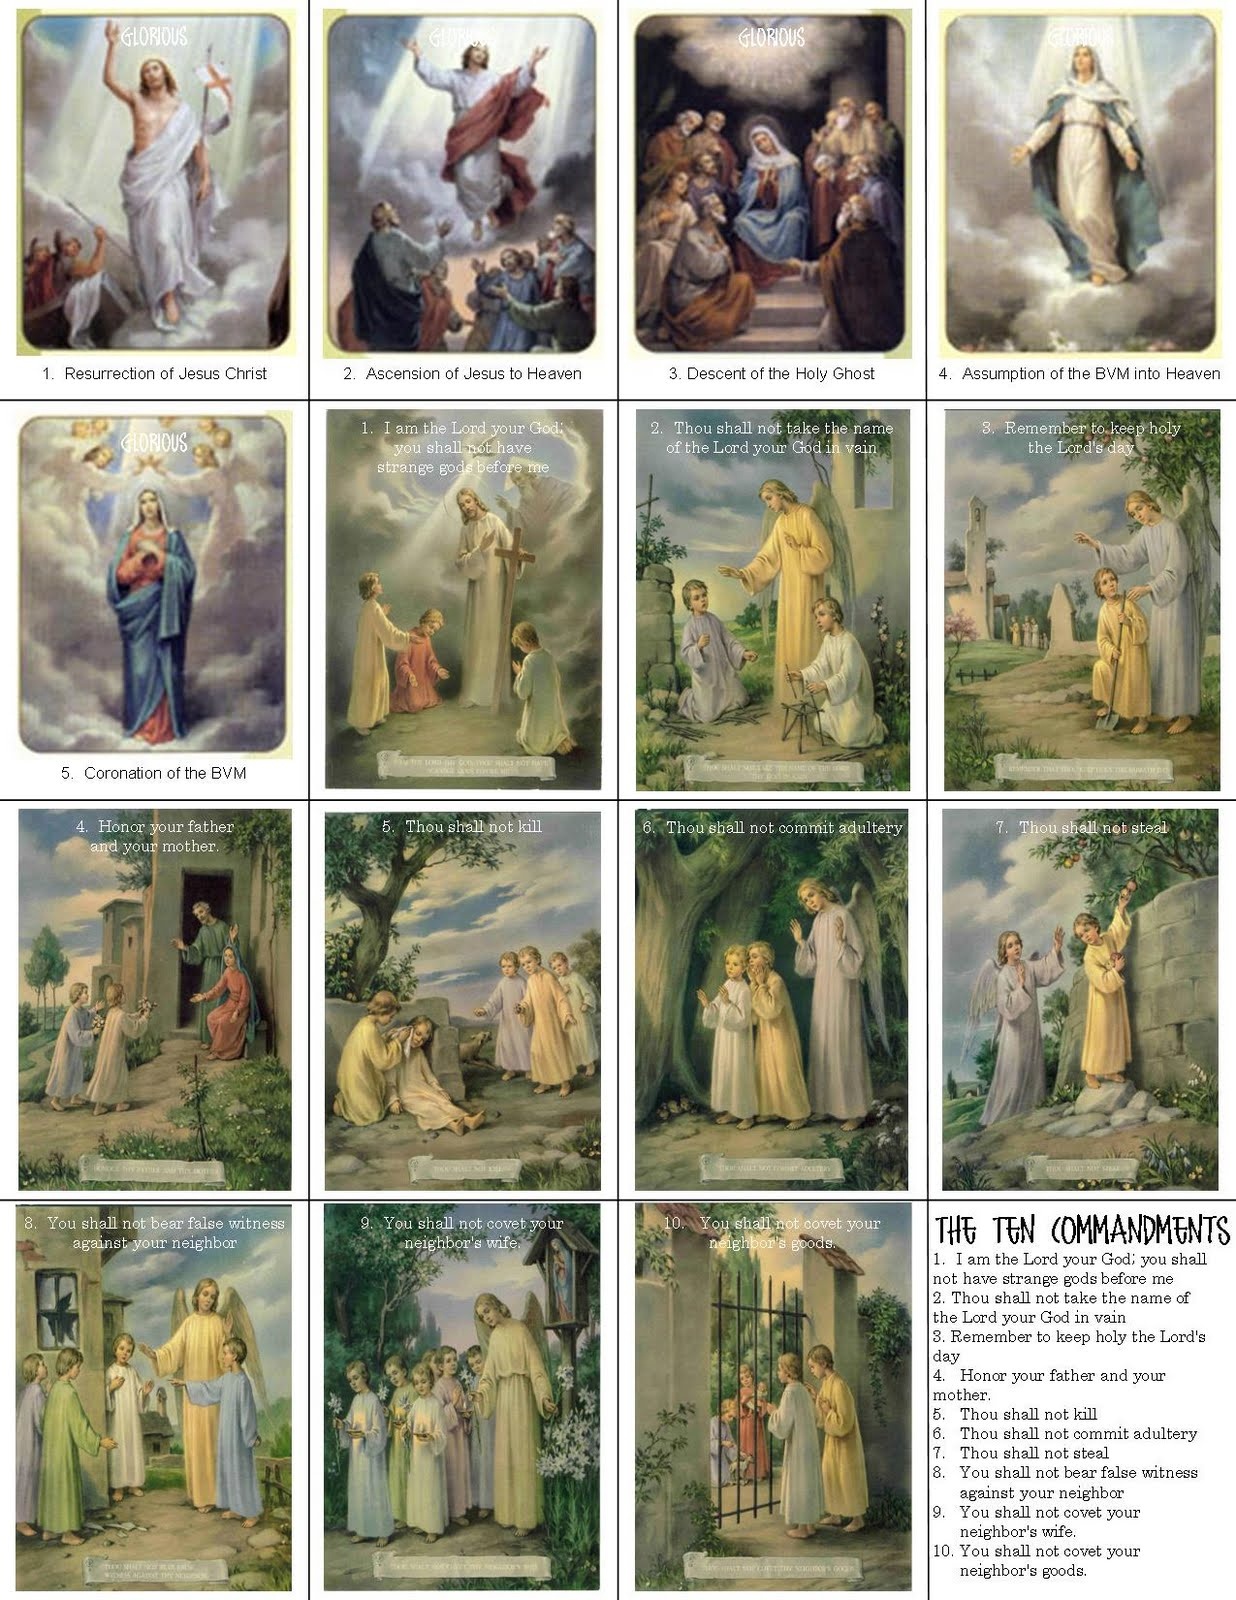 Catholic Prayer Cards - Free Printable Catholic Prayer Cards